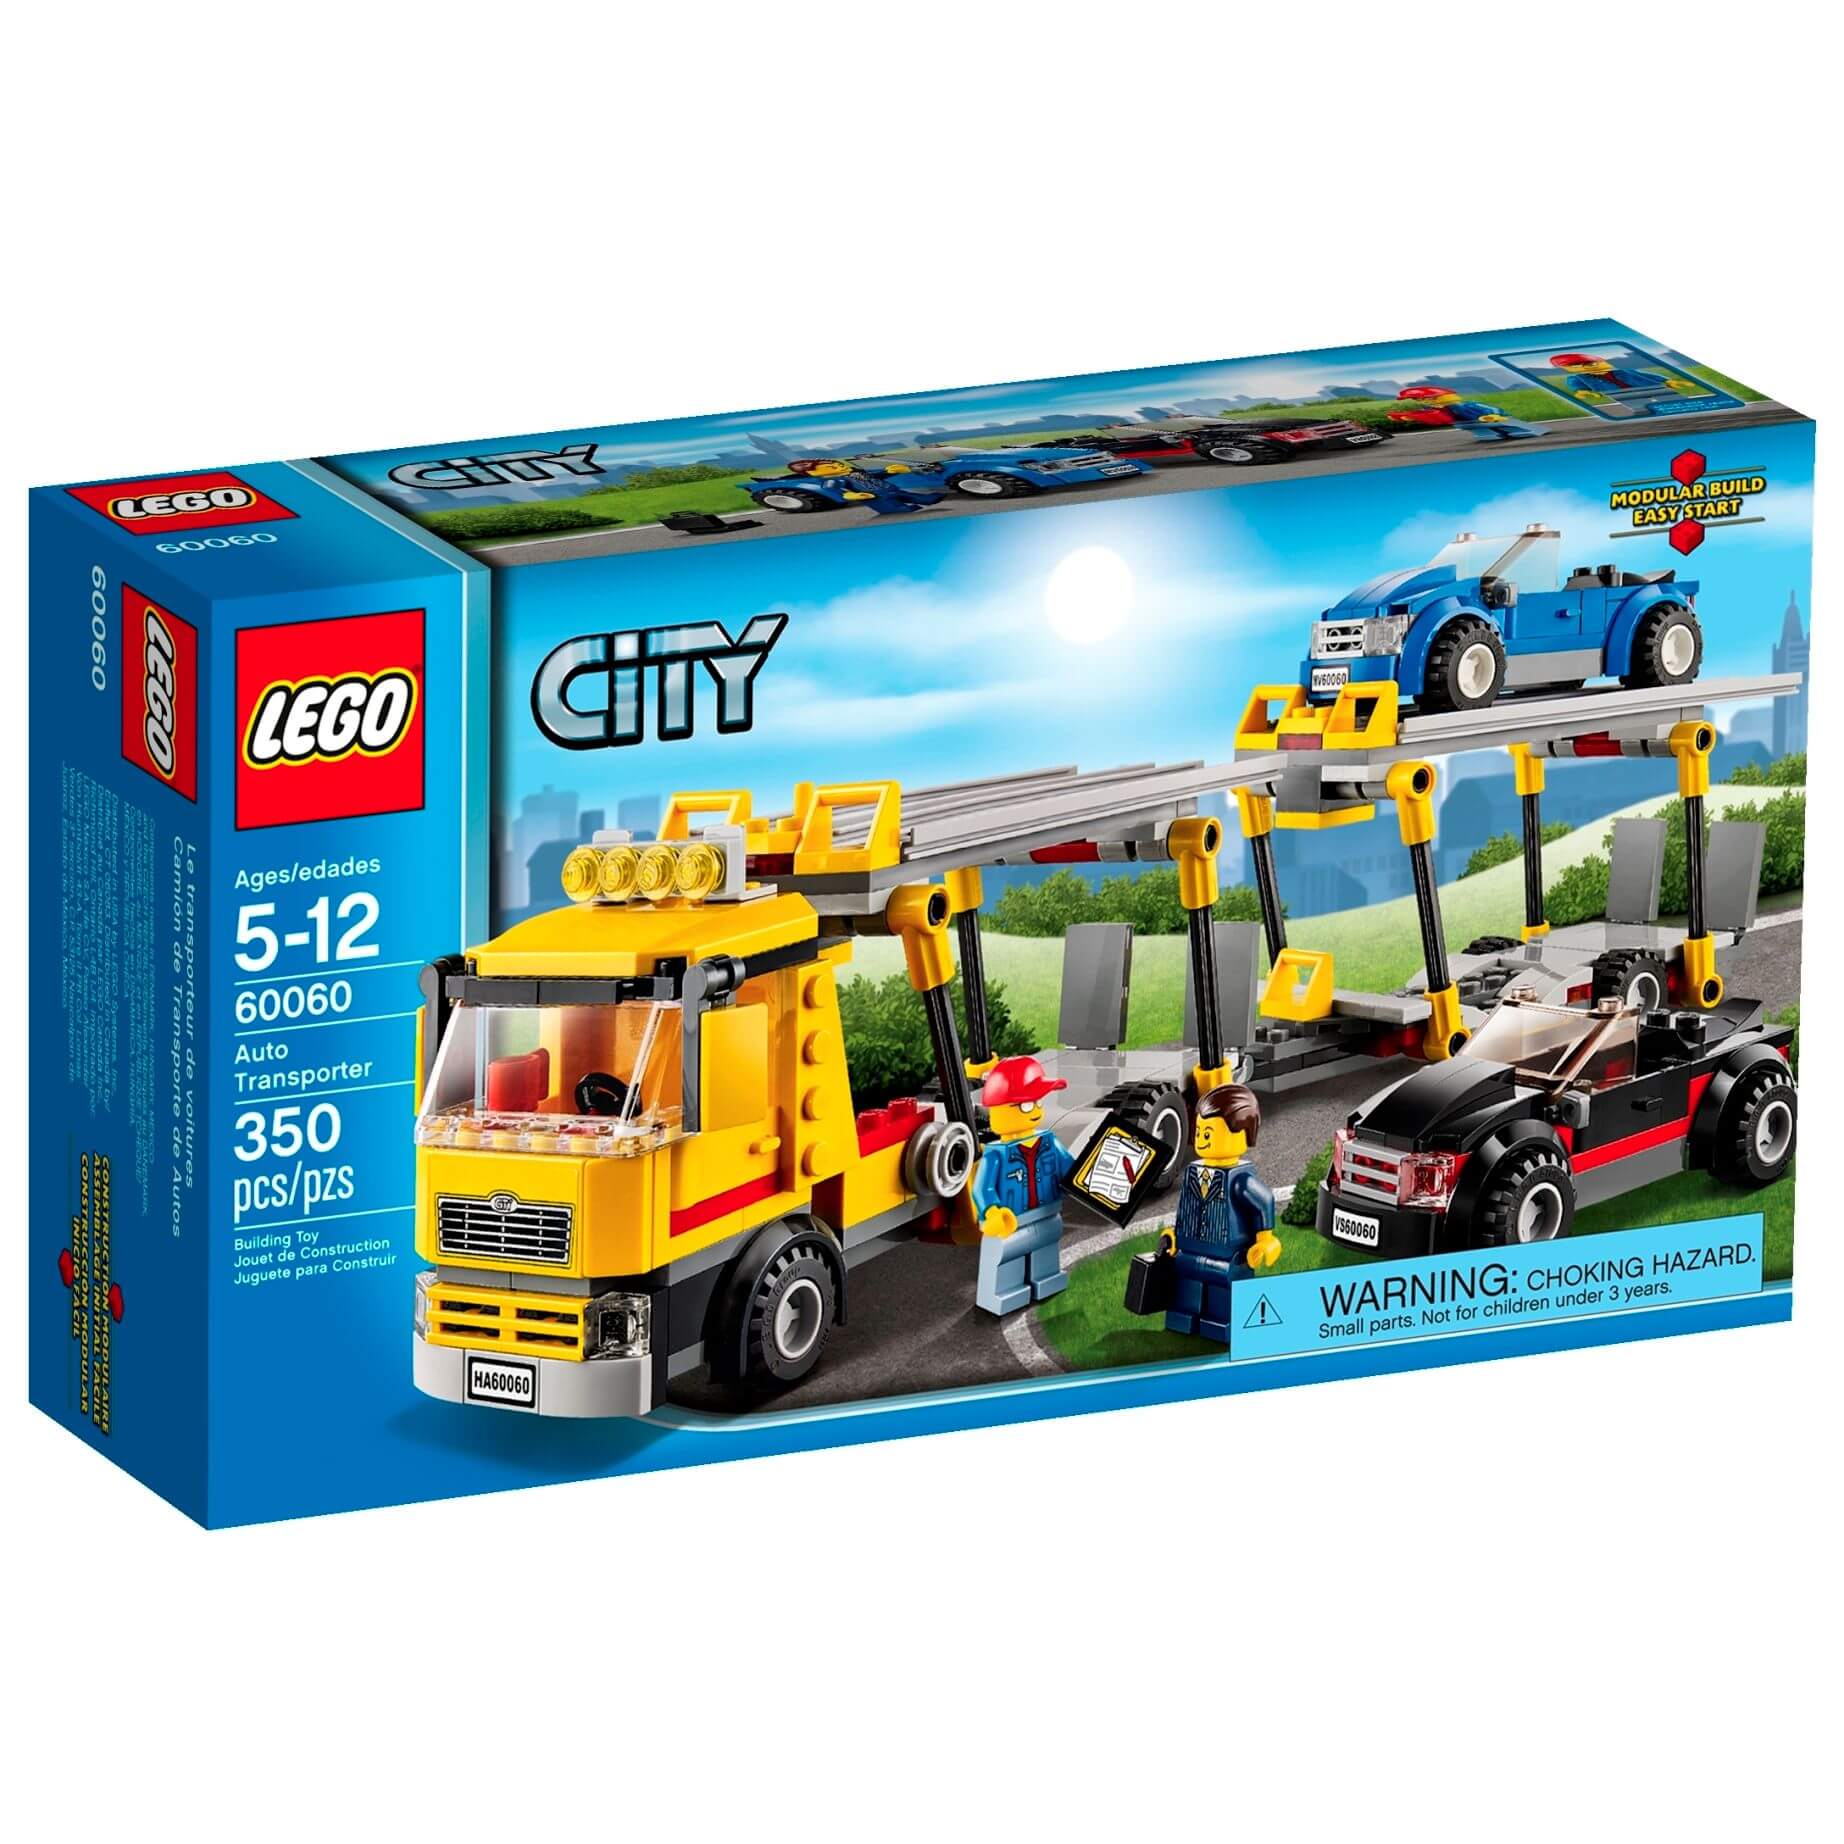  Set de constructie LEGO City - Great Vehicles Auto Transporter 60060 